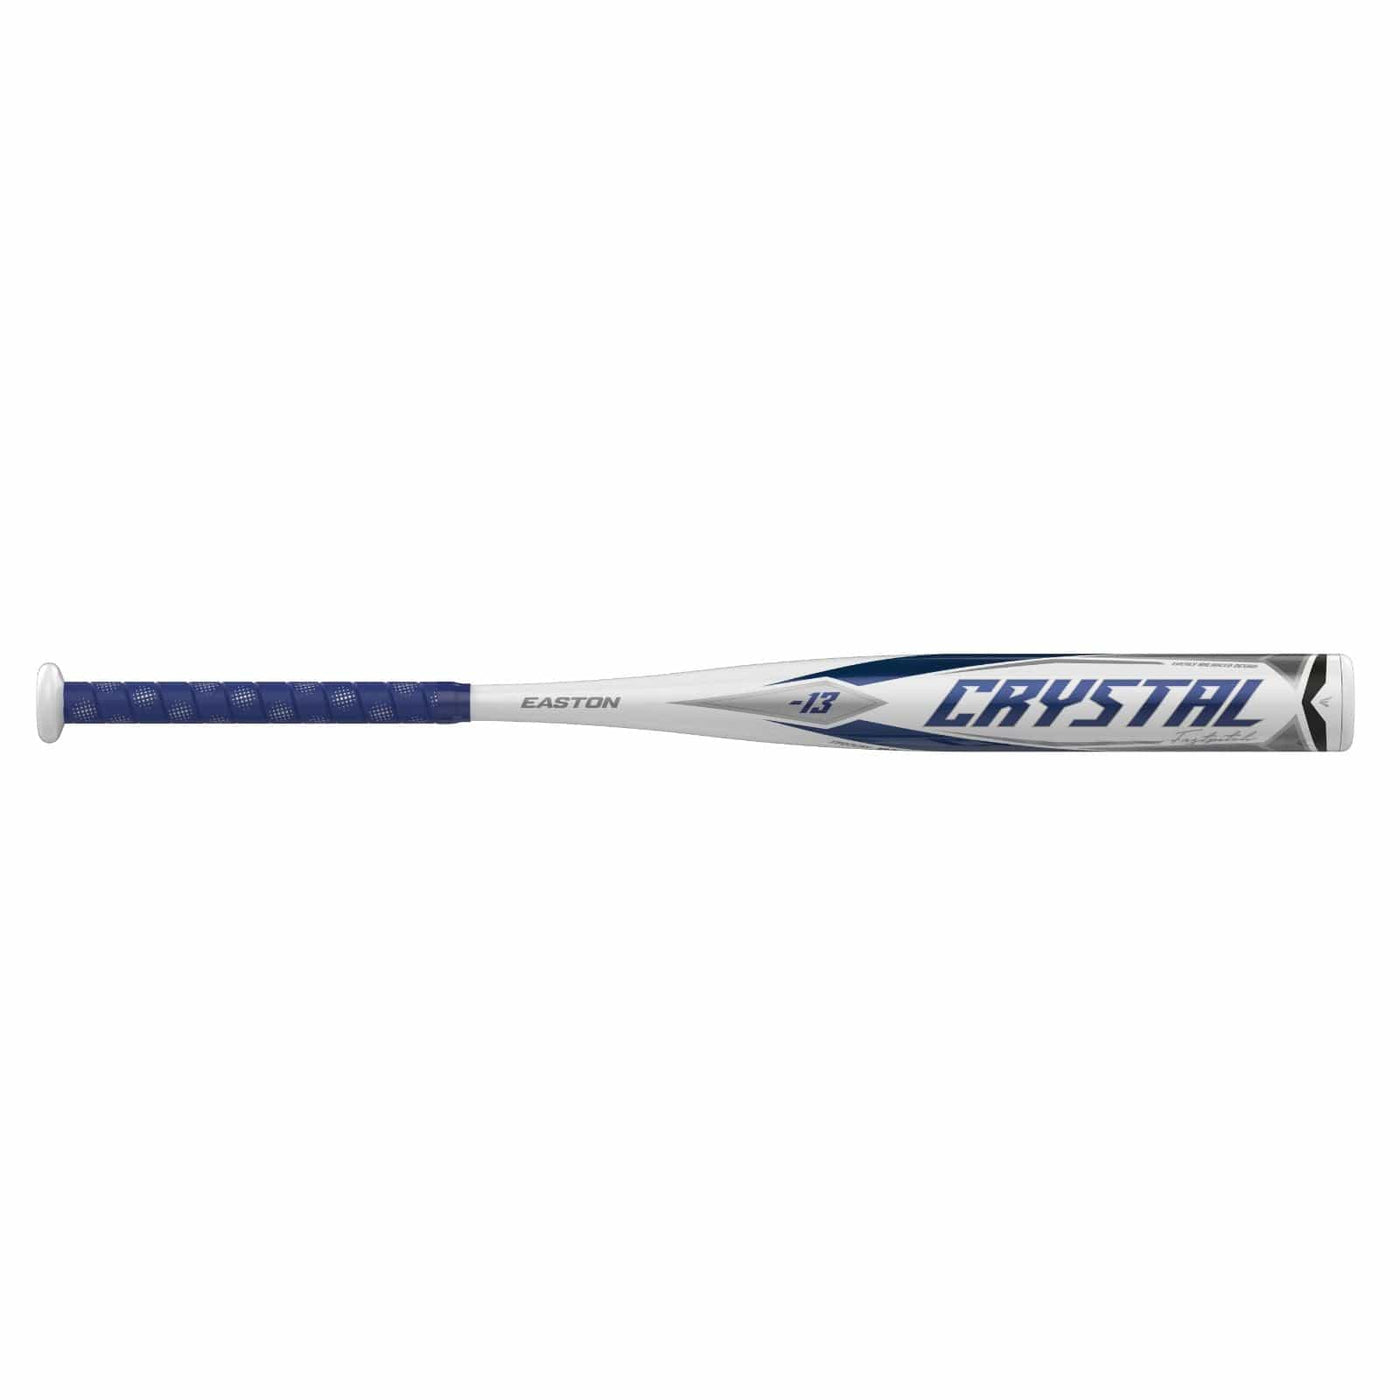 Easton Easton Crystal Fastpitch Softball Bat -13 28inch/15oz Sports